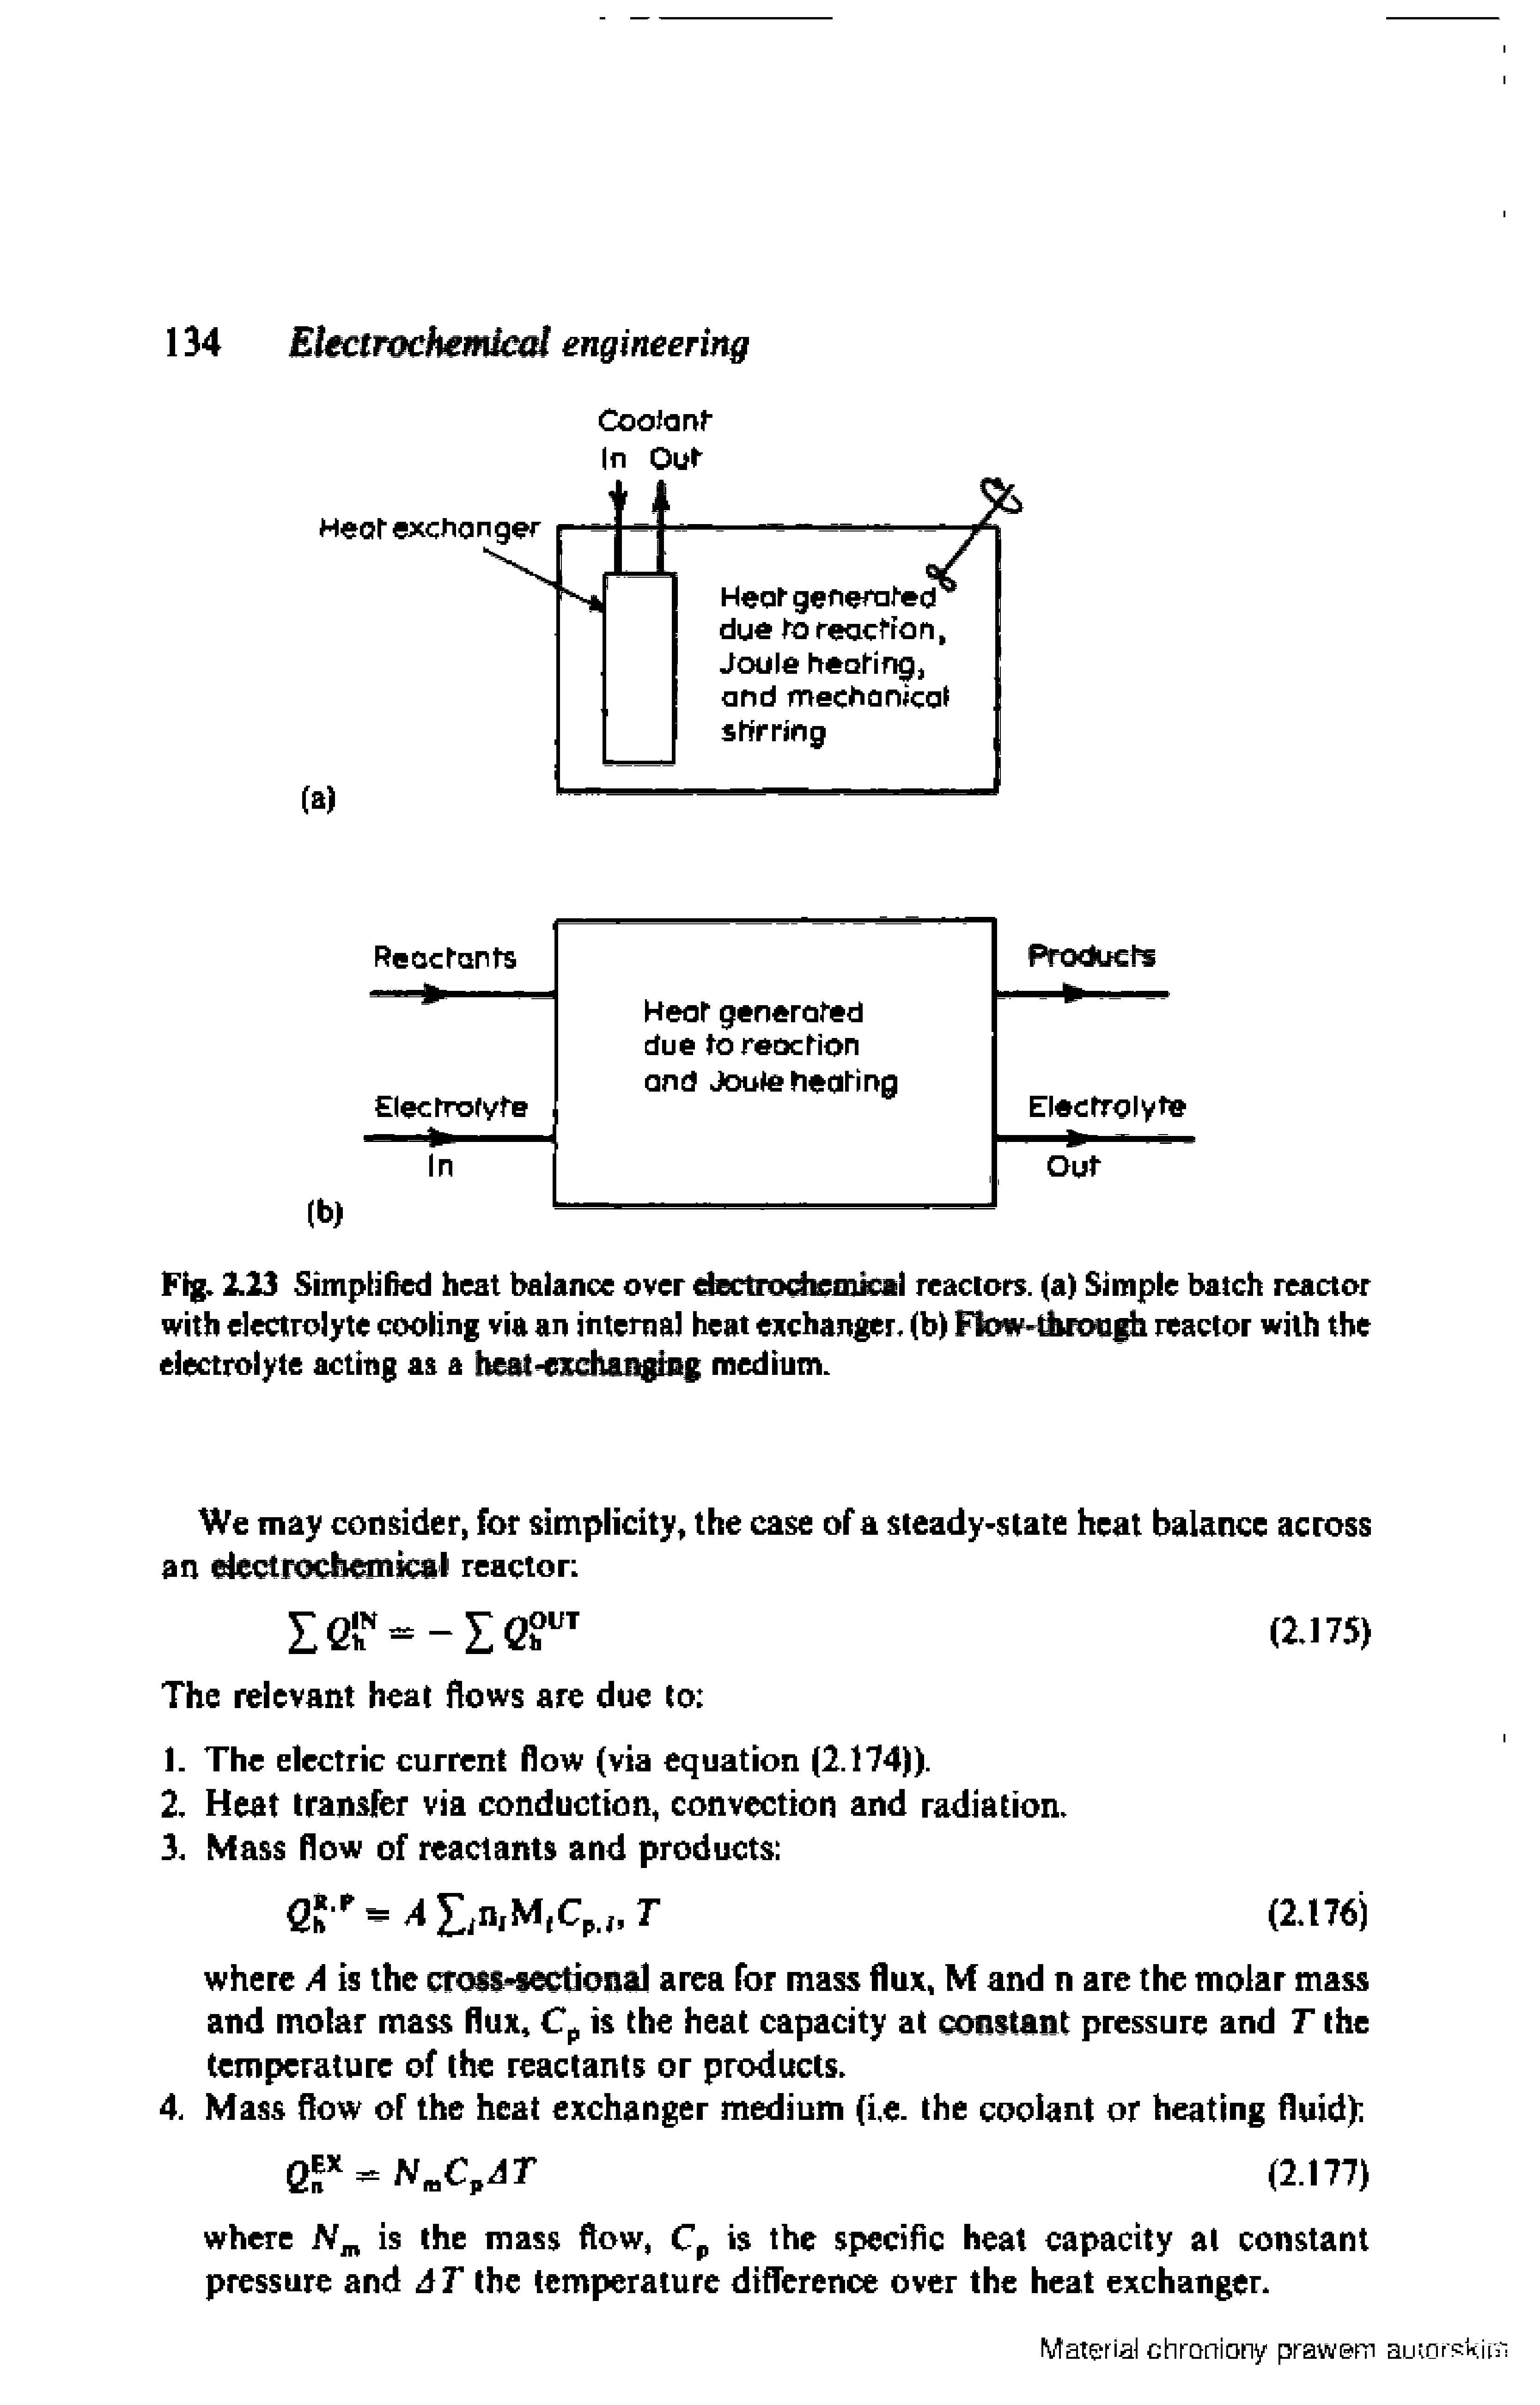 Fig. 2.23 Simplified heat balance over dectioc micil reactors, (a) Simple batch reactor with electrolyte cooling via an interna) heat eitchanger. (b) Fbw-difoiaih reactor with the electrolyte acting as a h -eiEchiiigjsg medium.